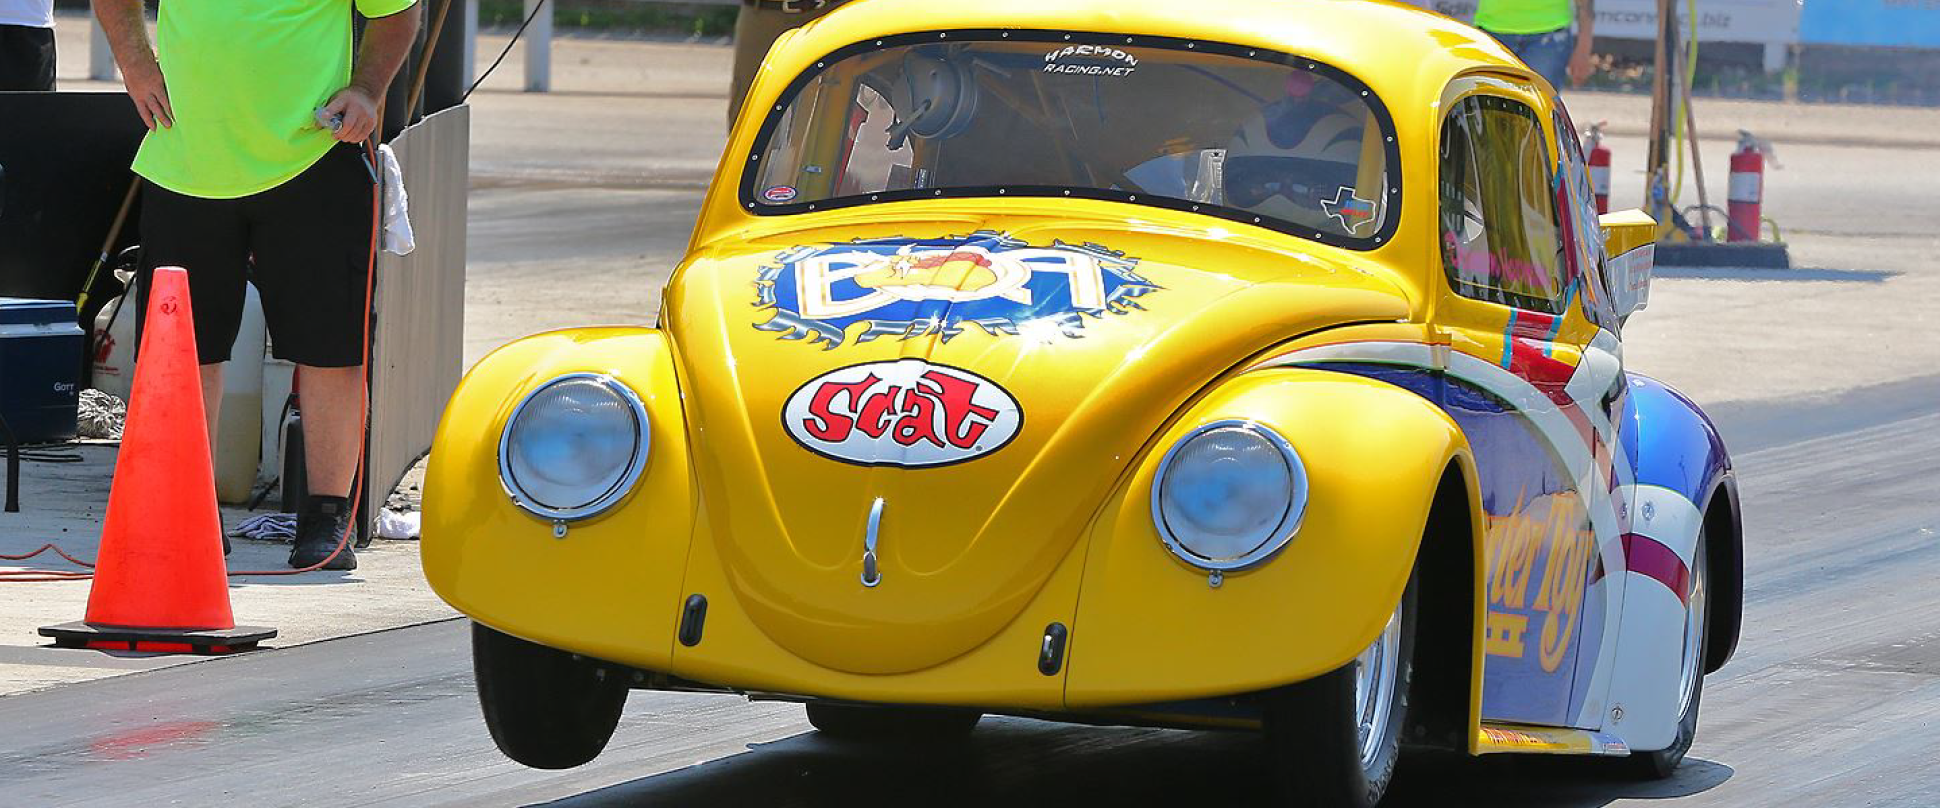 Volkswagen beetle car volkswagen logo de golf, volkswagen, emblema, marca,  logo png